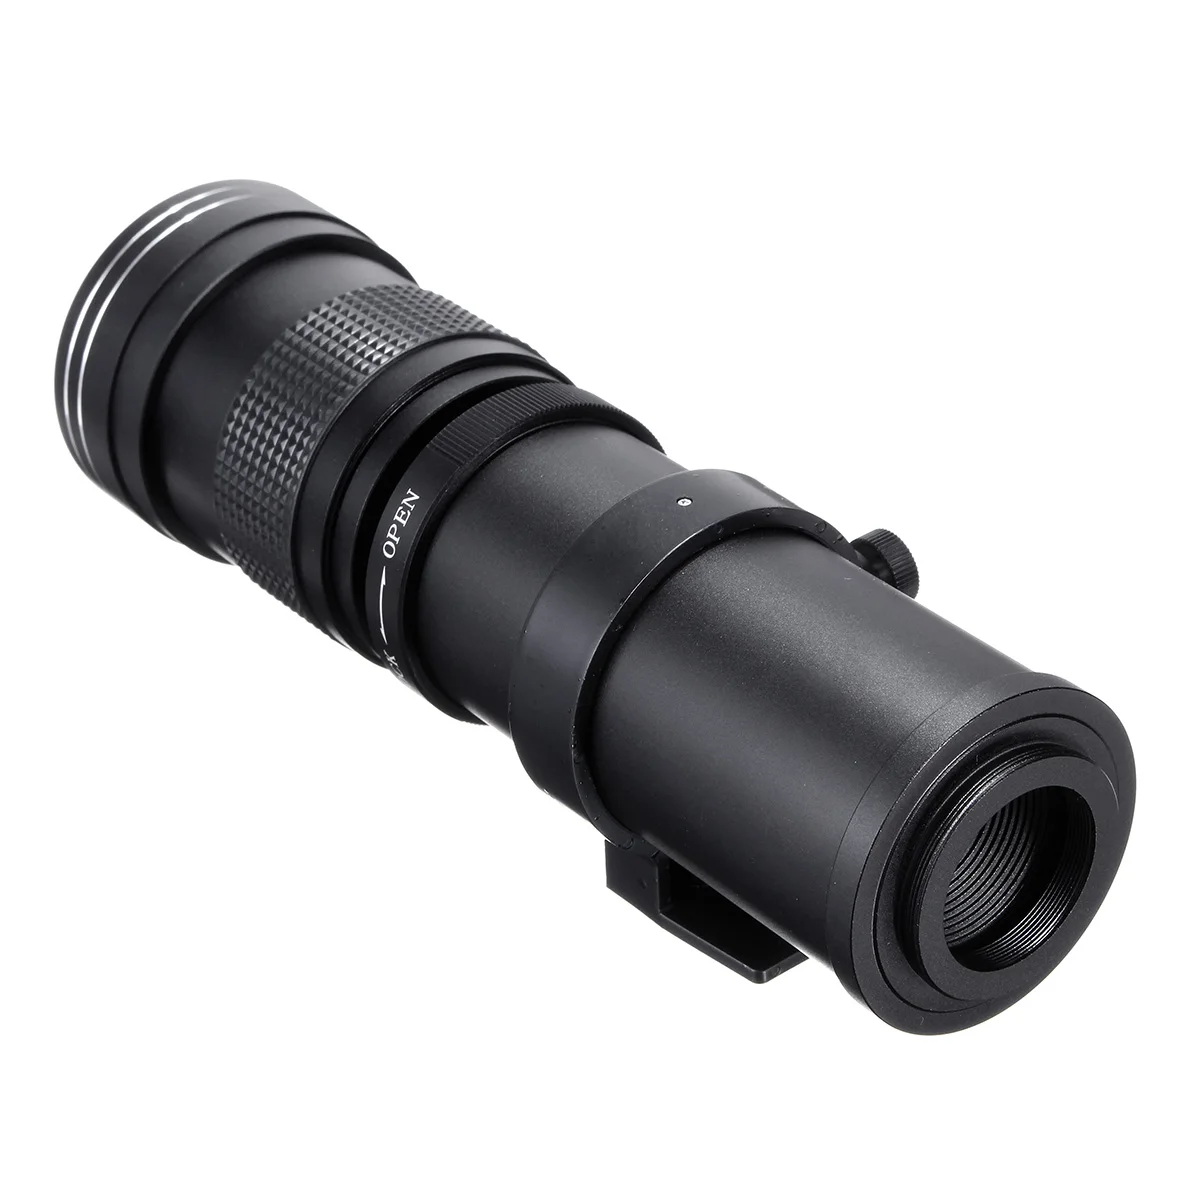 Объектив камеры 420-800 мм F/8,3-16 супер телеобъектив ручной зум-объектив с Т-образным креплением для Canon/Nikon для sony/Pentax DSLR SLR